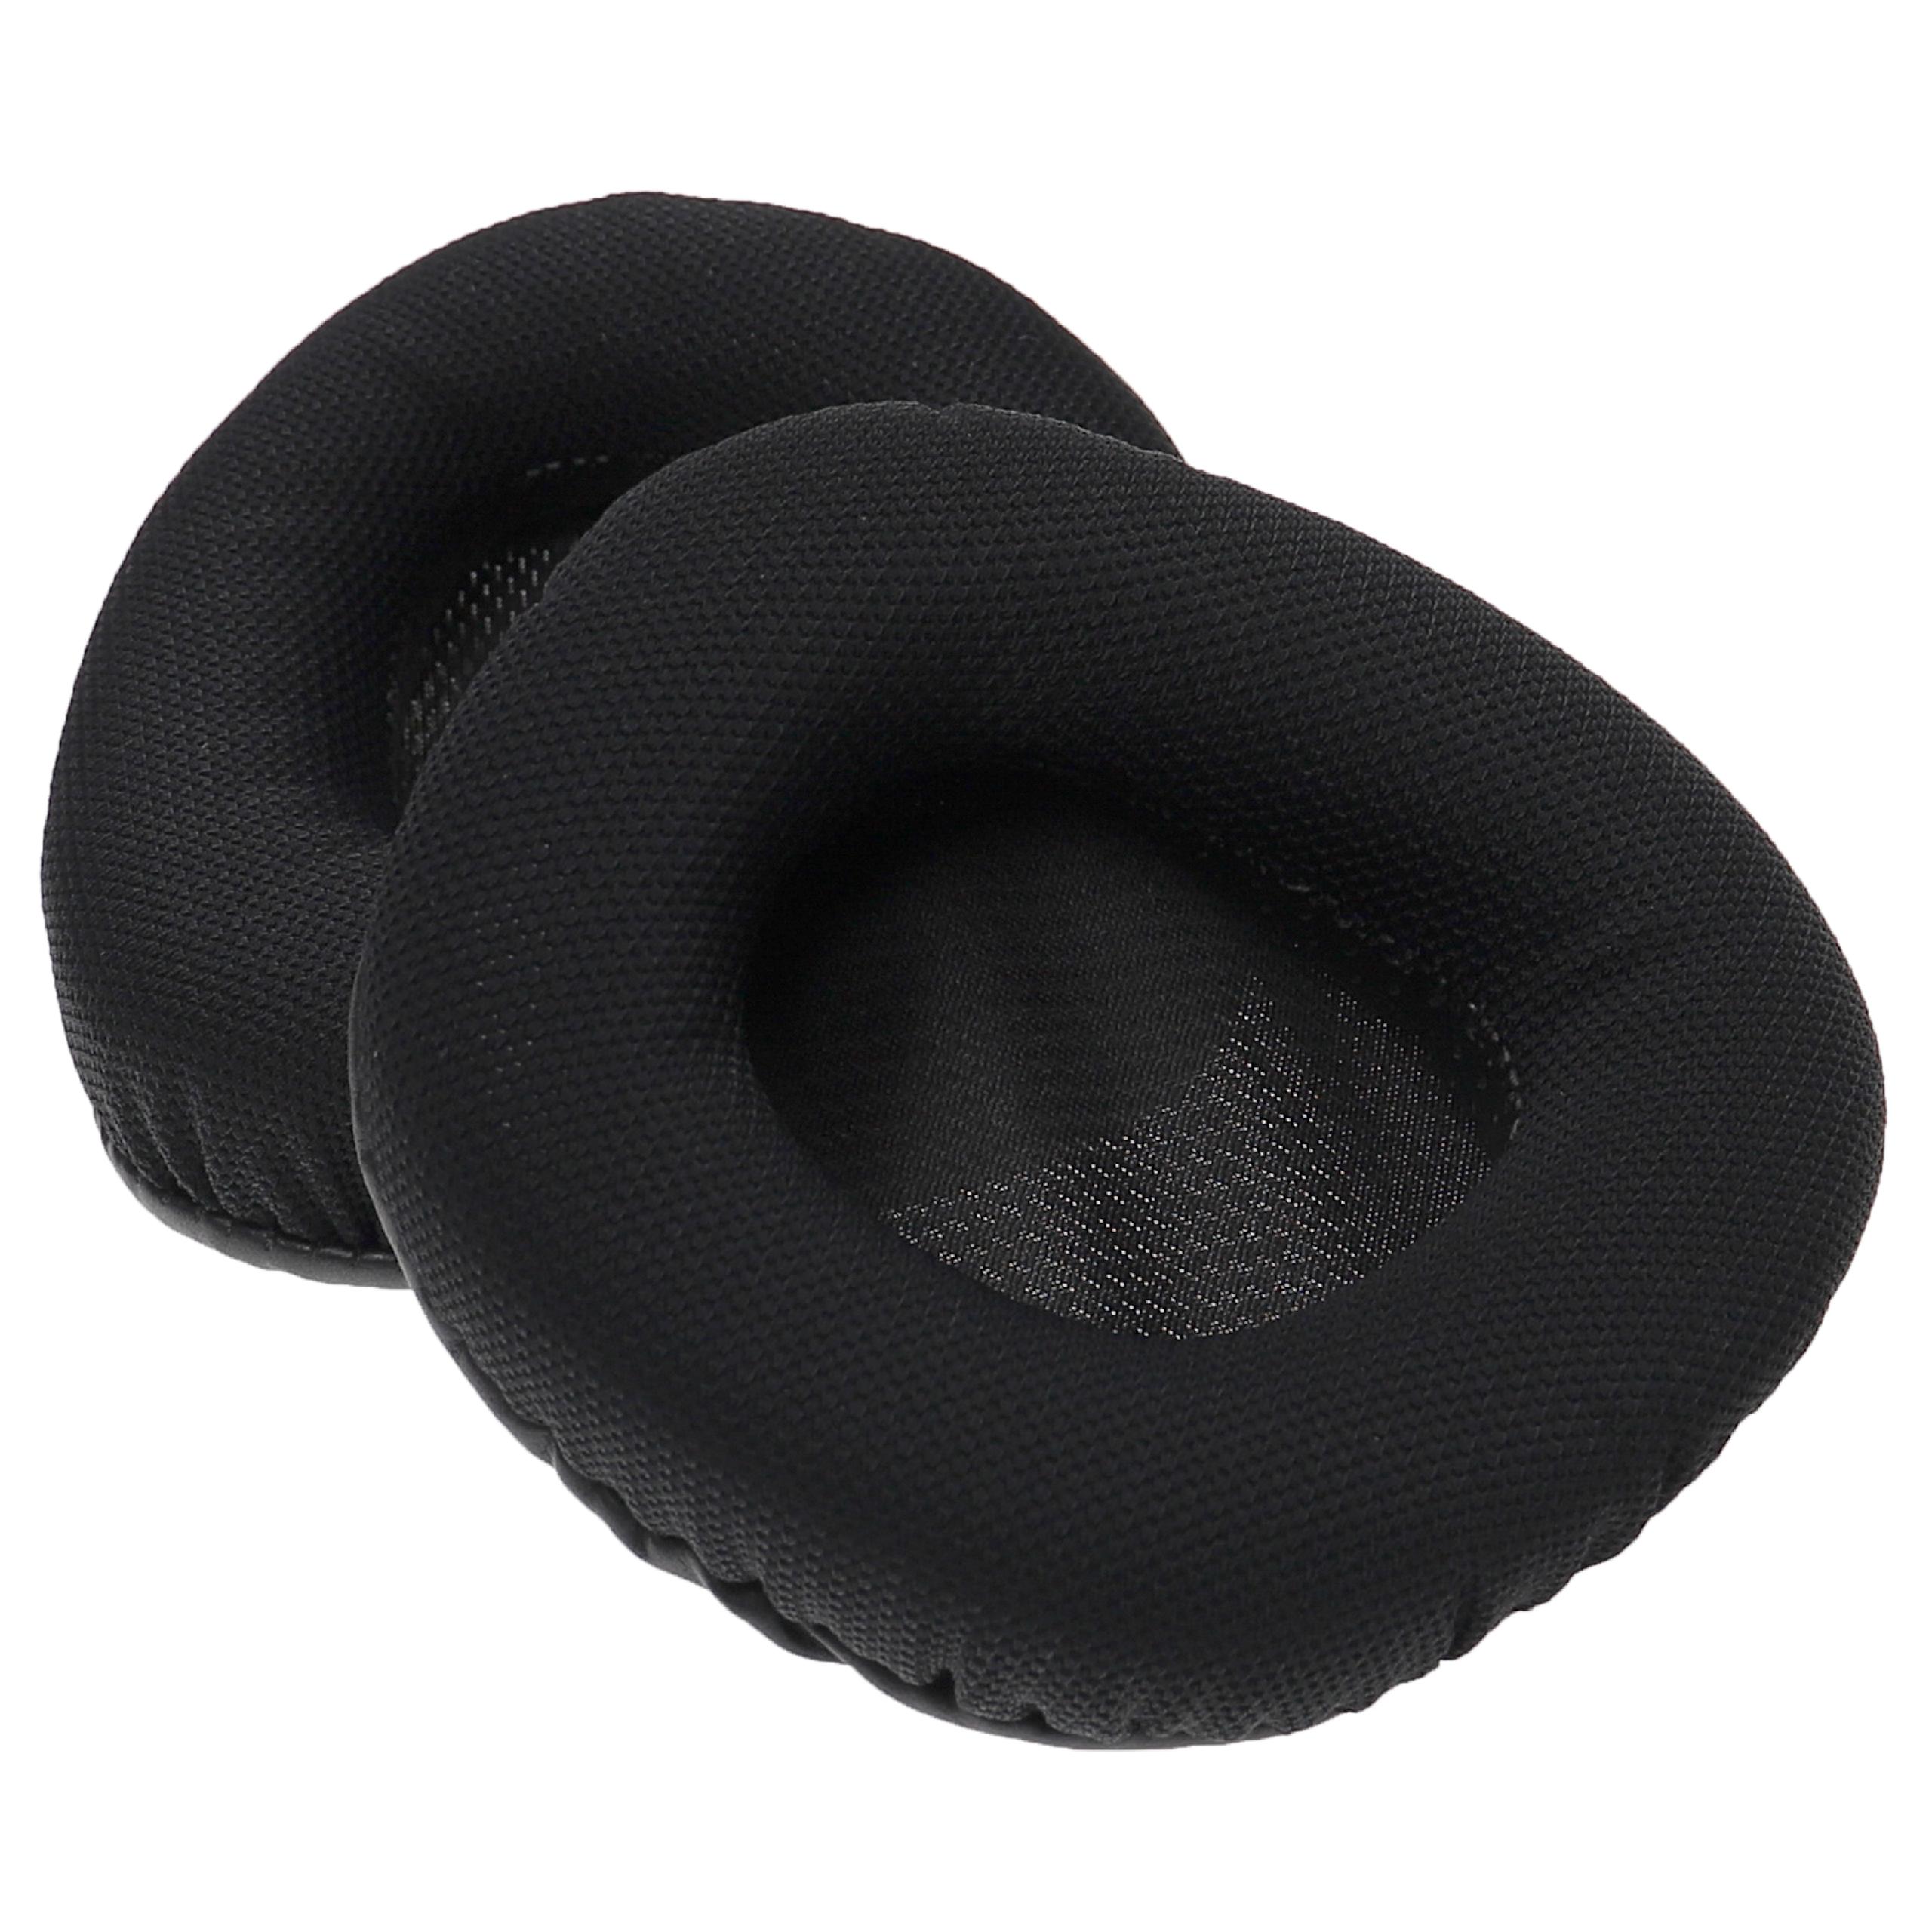 Ohrenpolster passend für Corsair Void Pro RGB Kopfhörer u.a. - , 10,5 x 8,7 cm, Schwarz